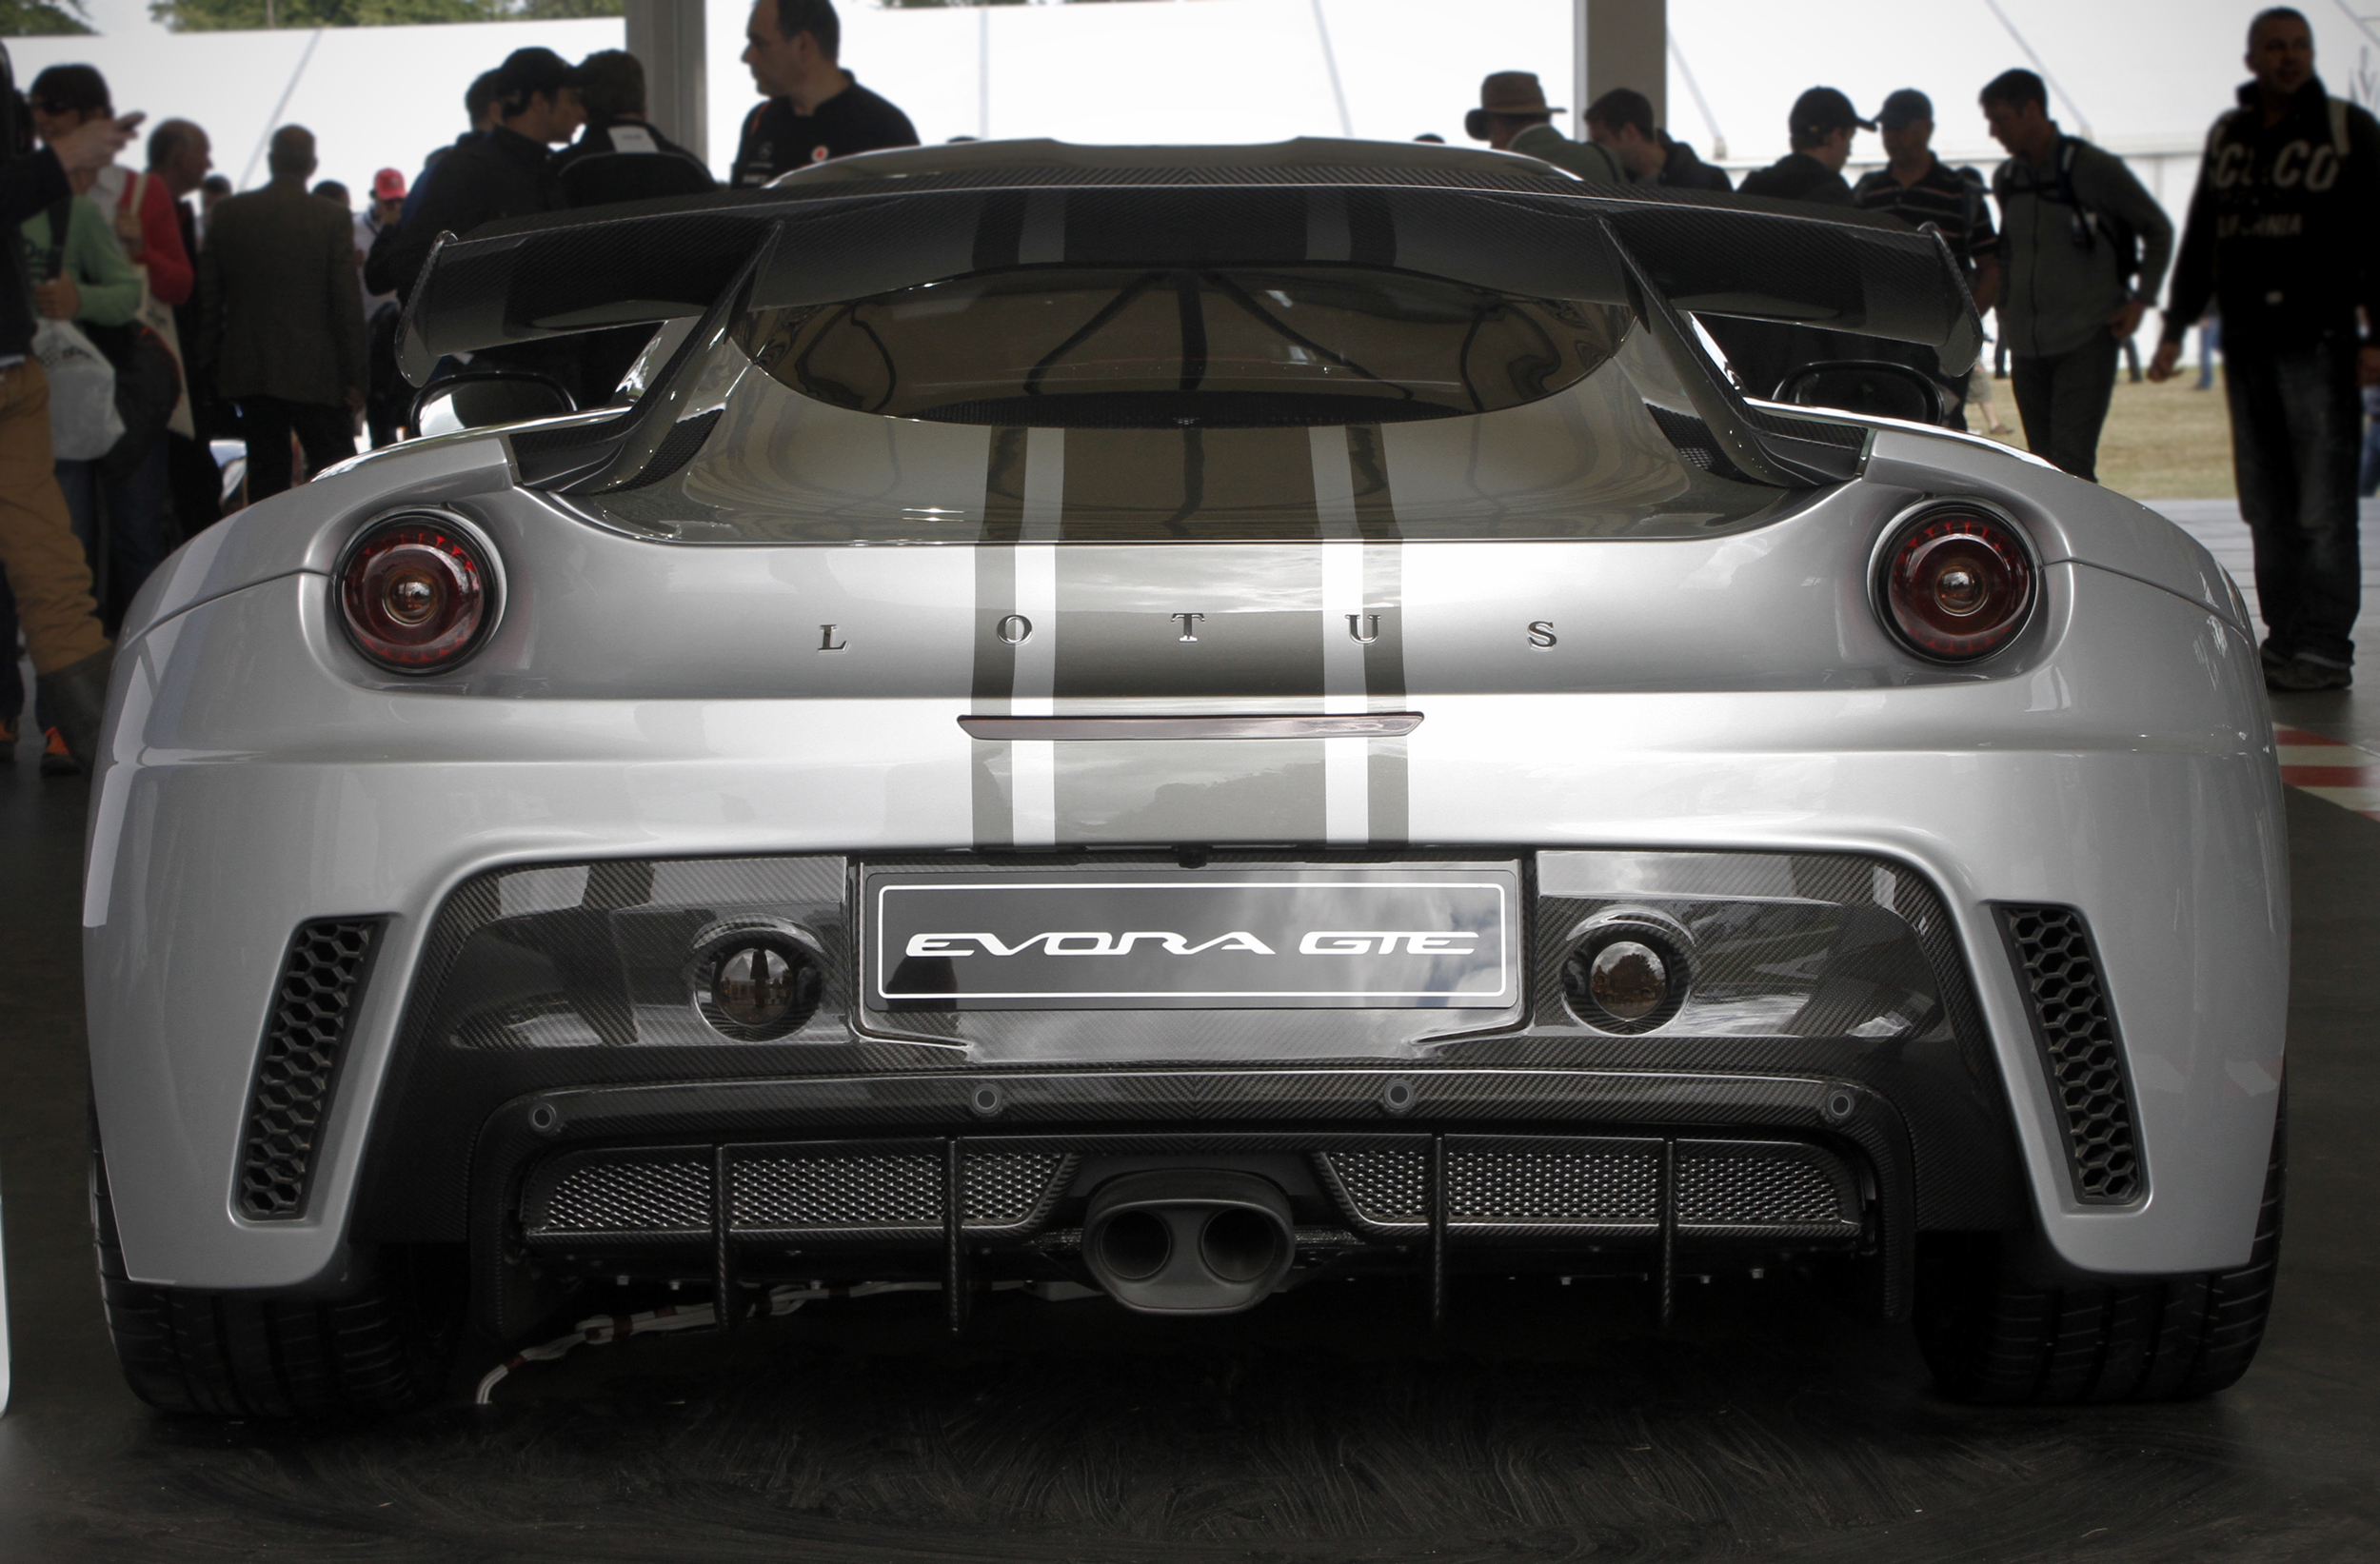 Lotus Evora GTE | Flickr - Photo Sharing!